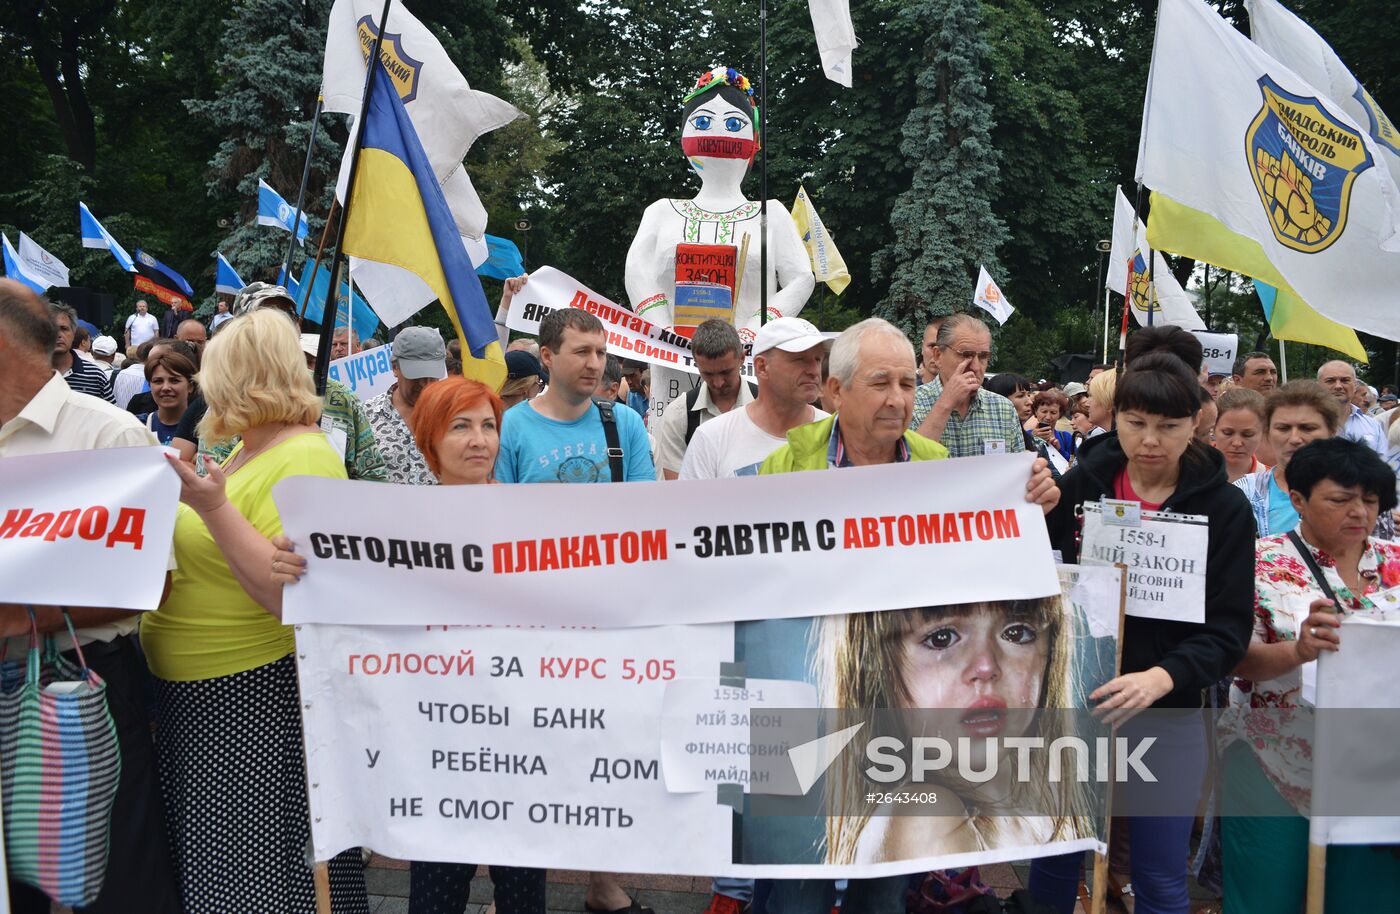 Protest action in Kiev